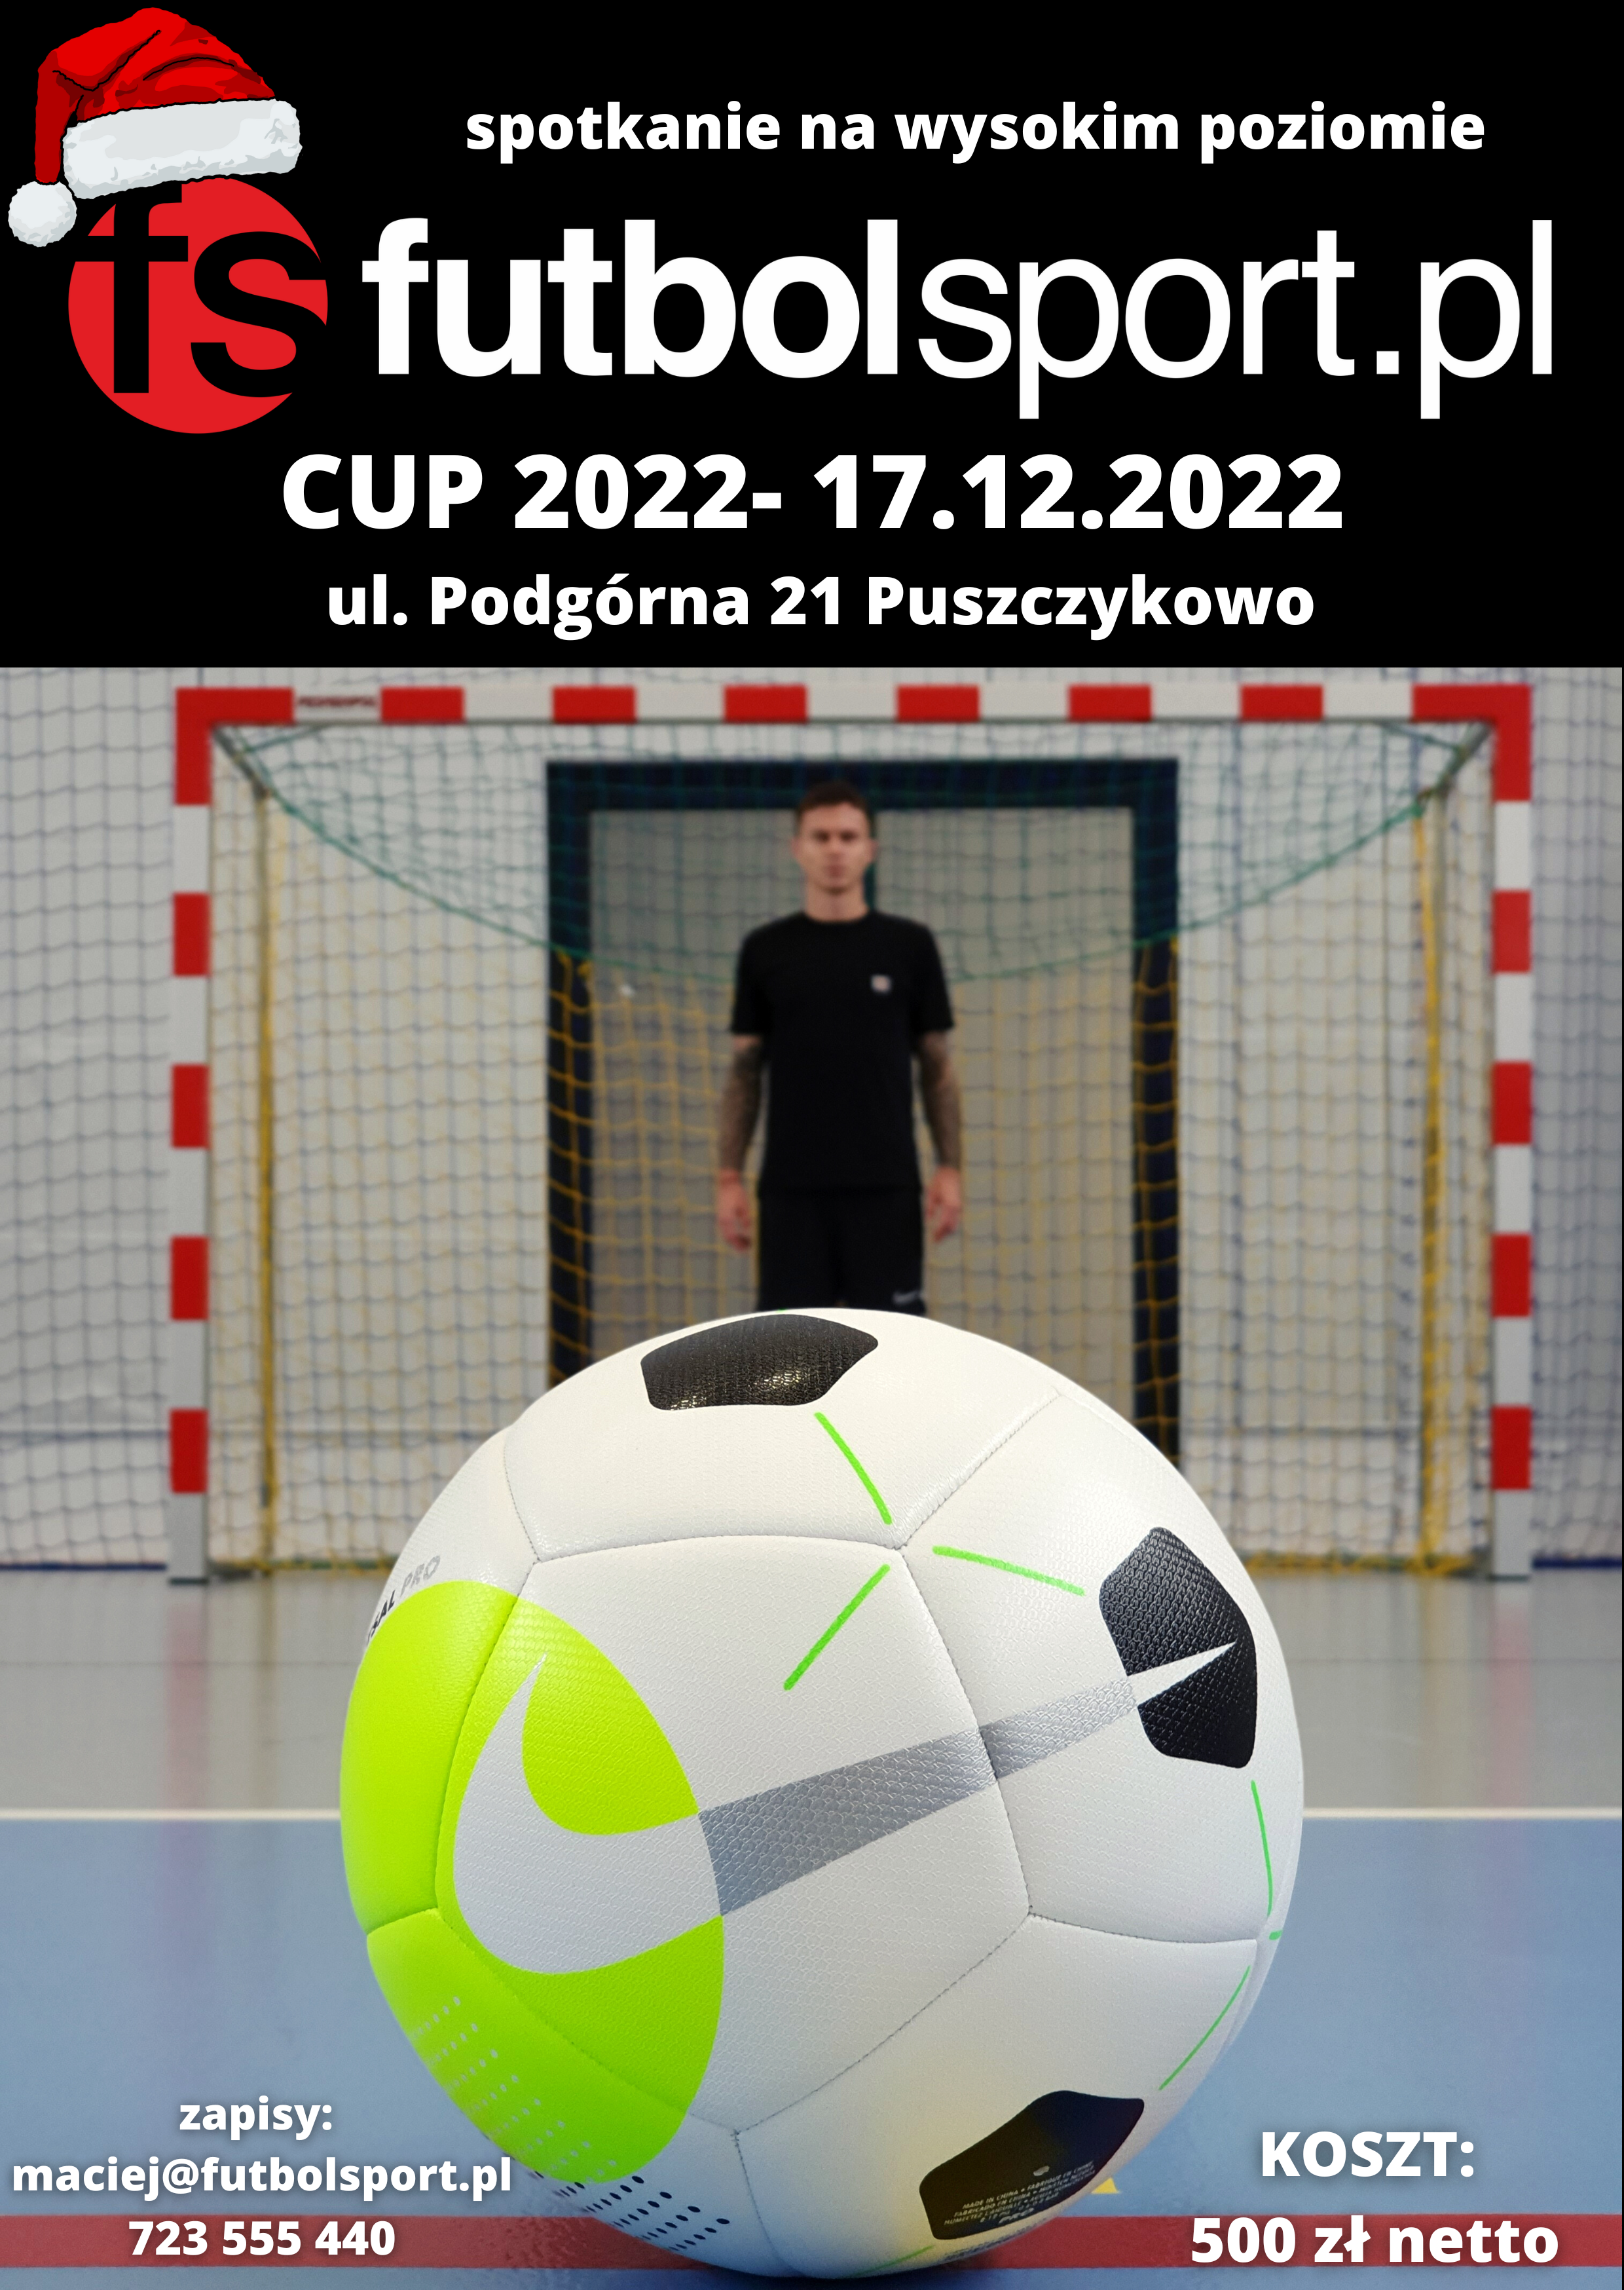 Podział na grupy i terminarz Świątecznego Turnieju futbolsport.pl Cup 2022